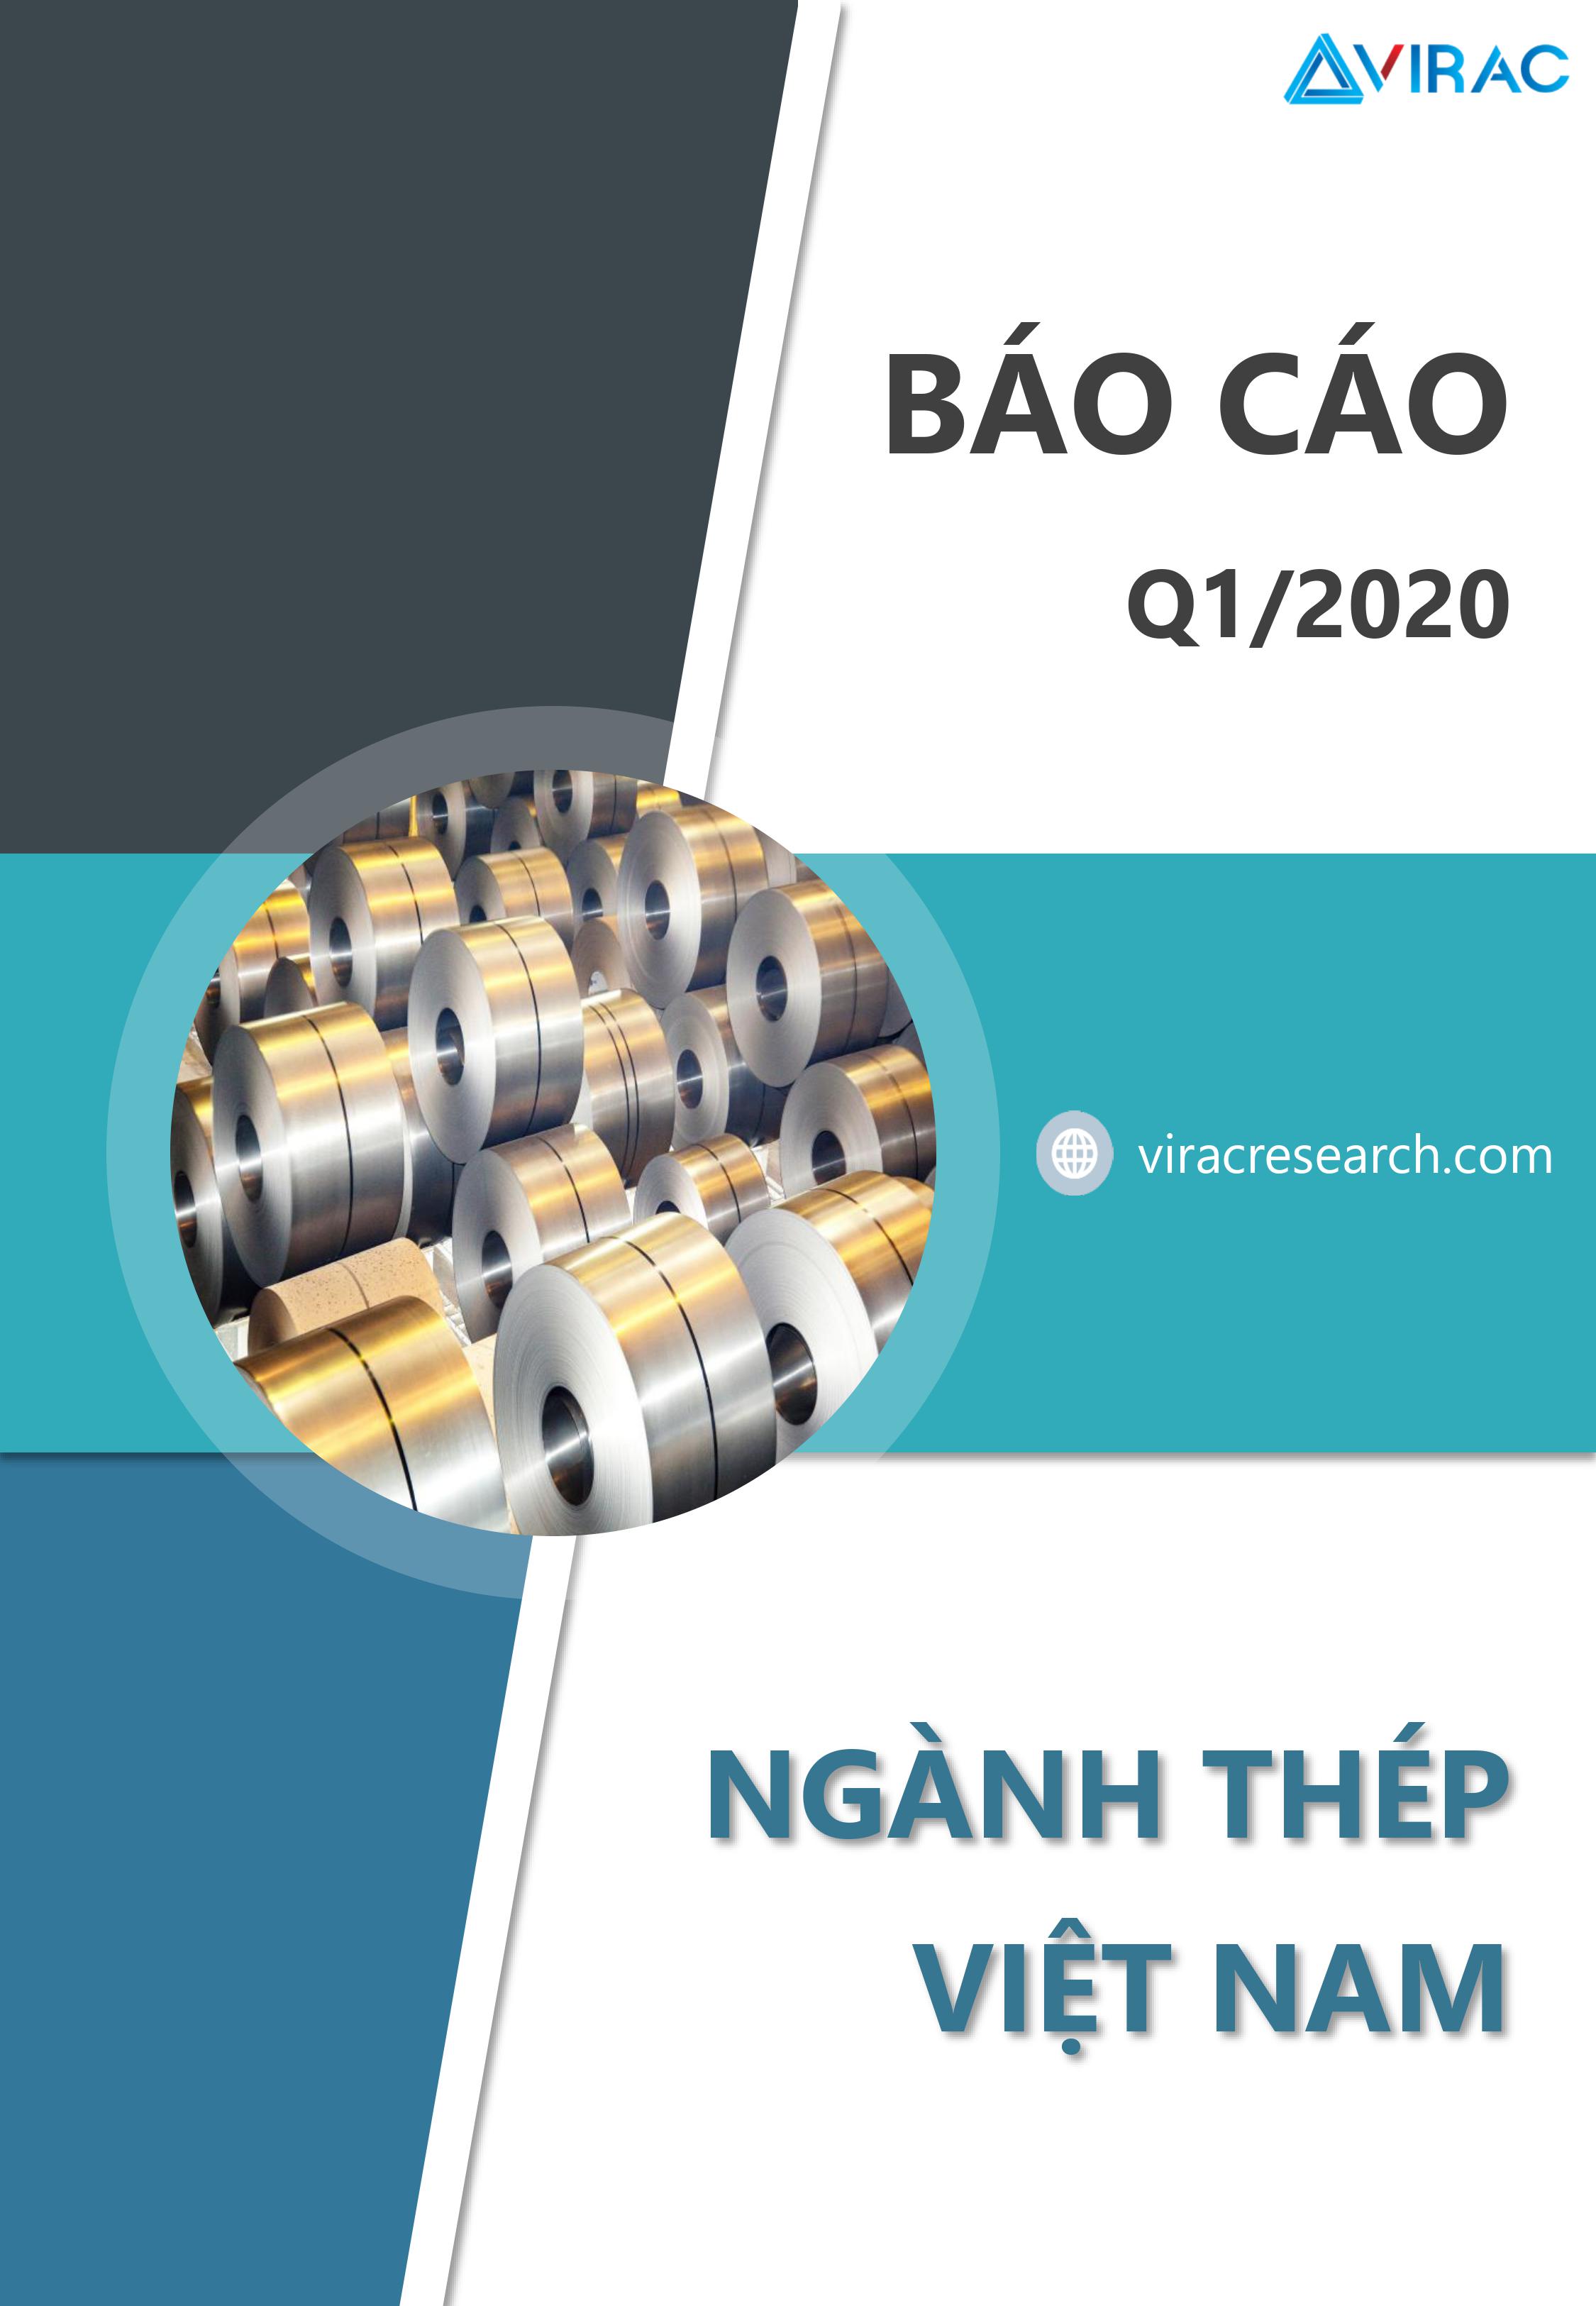 steel-industry-Vietnam